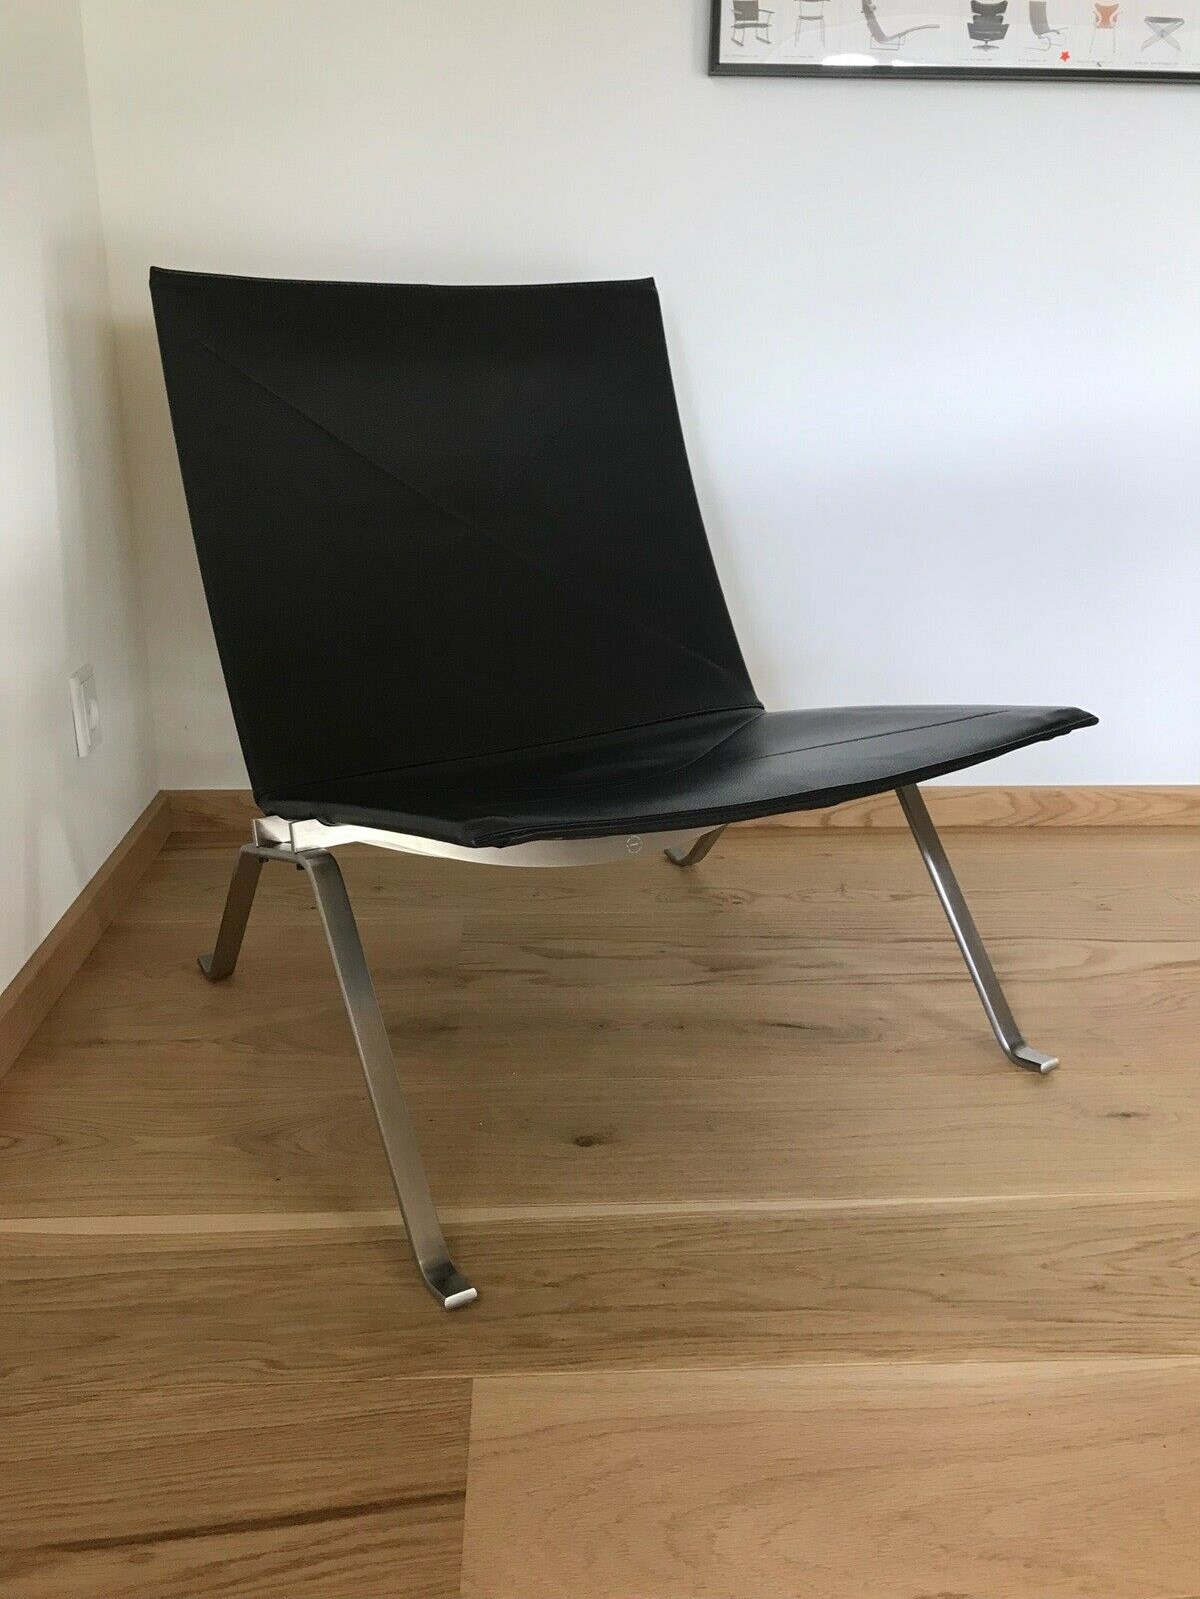 ’PK 22’ er en af de mest kendte designstole. Den er tegnet af Poul Kjærholm.